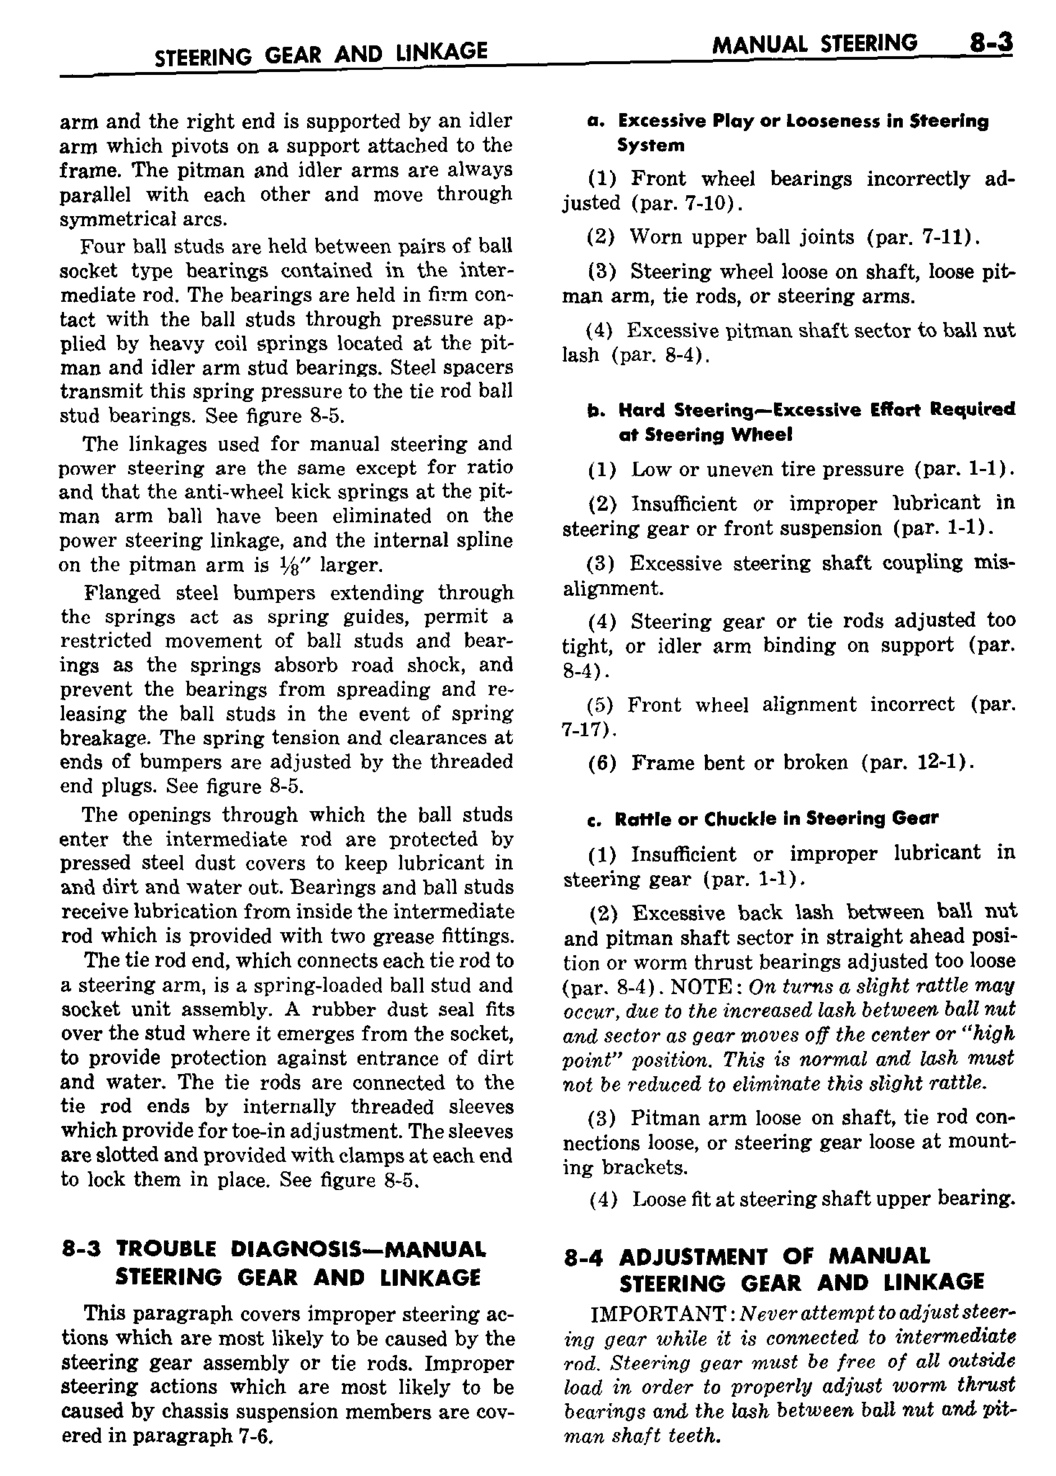 n_09 1959 Buick Shop Manual - Steering-003-003.jpg